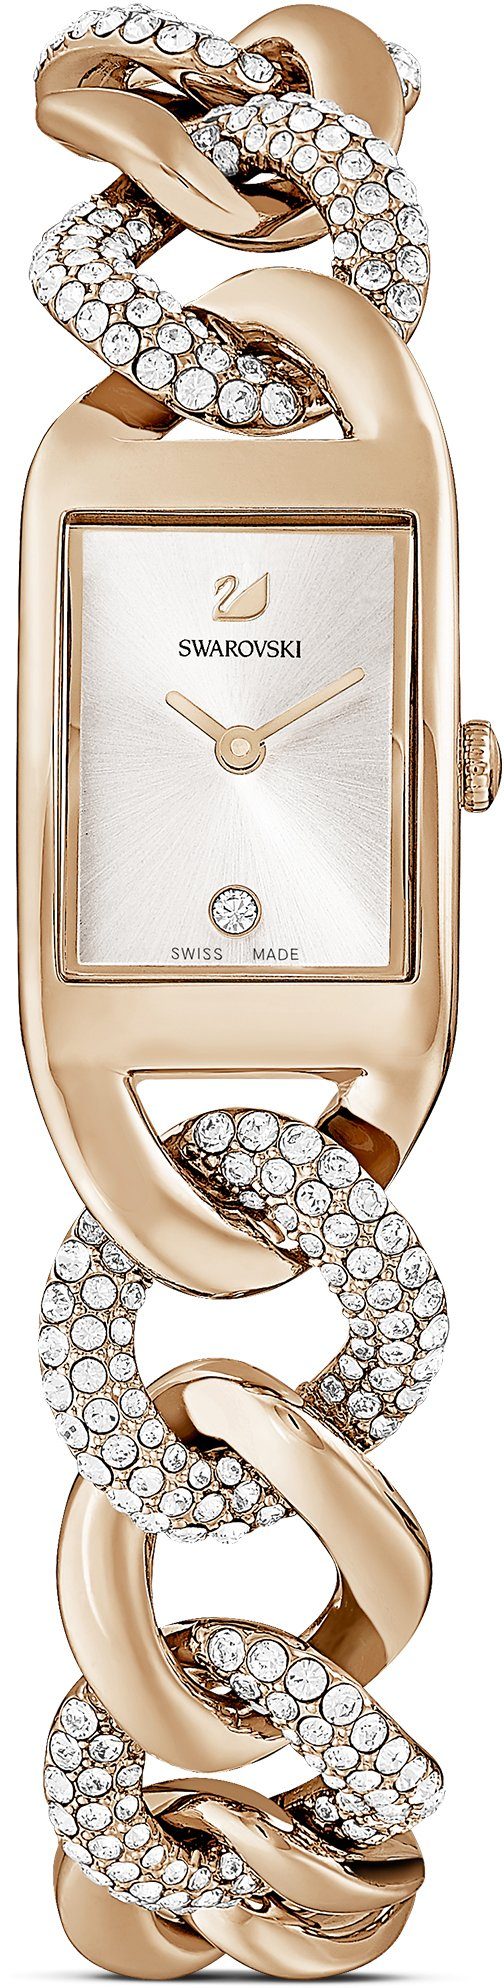 Swarovski Schweizer Uhr »COCKTAIL, 5519321« kaufen | OTTO